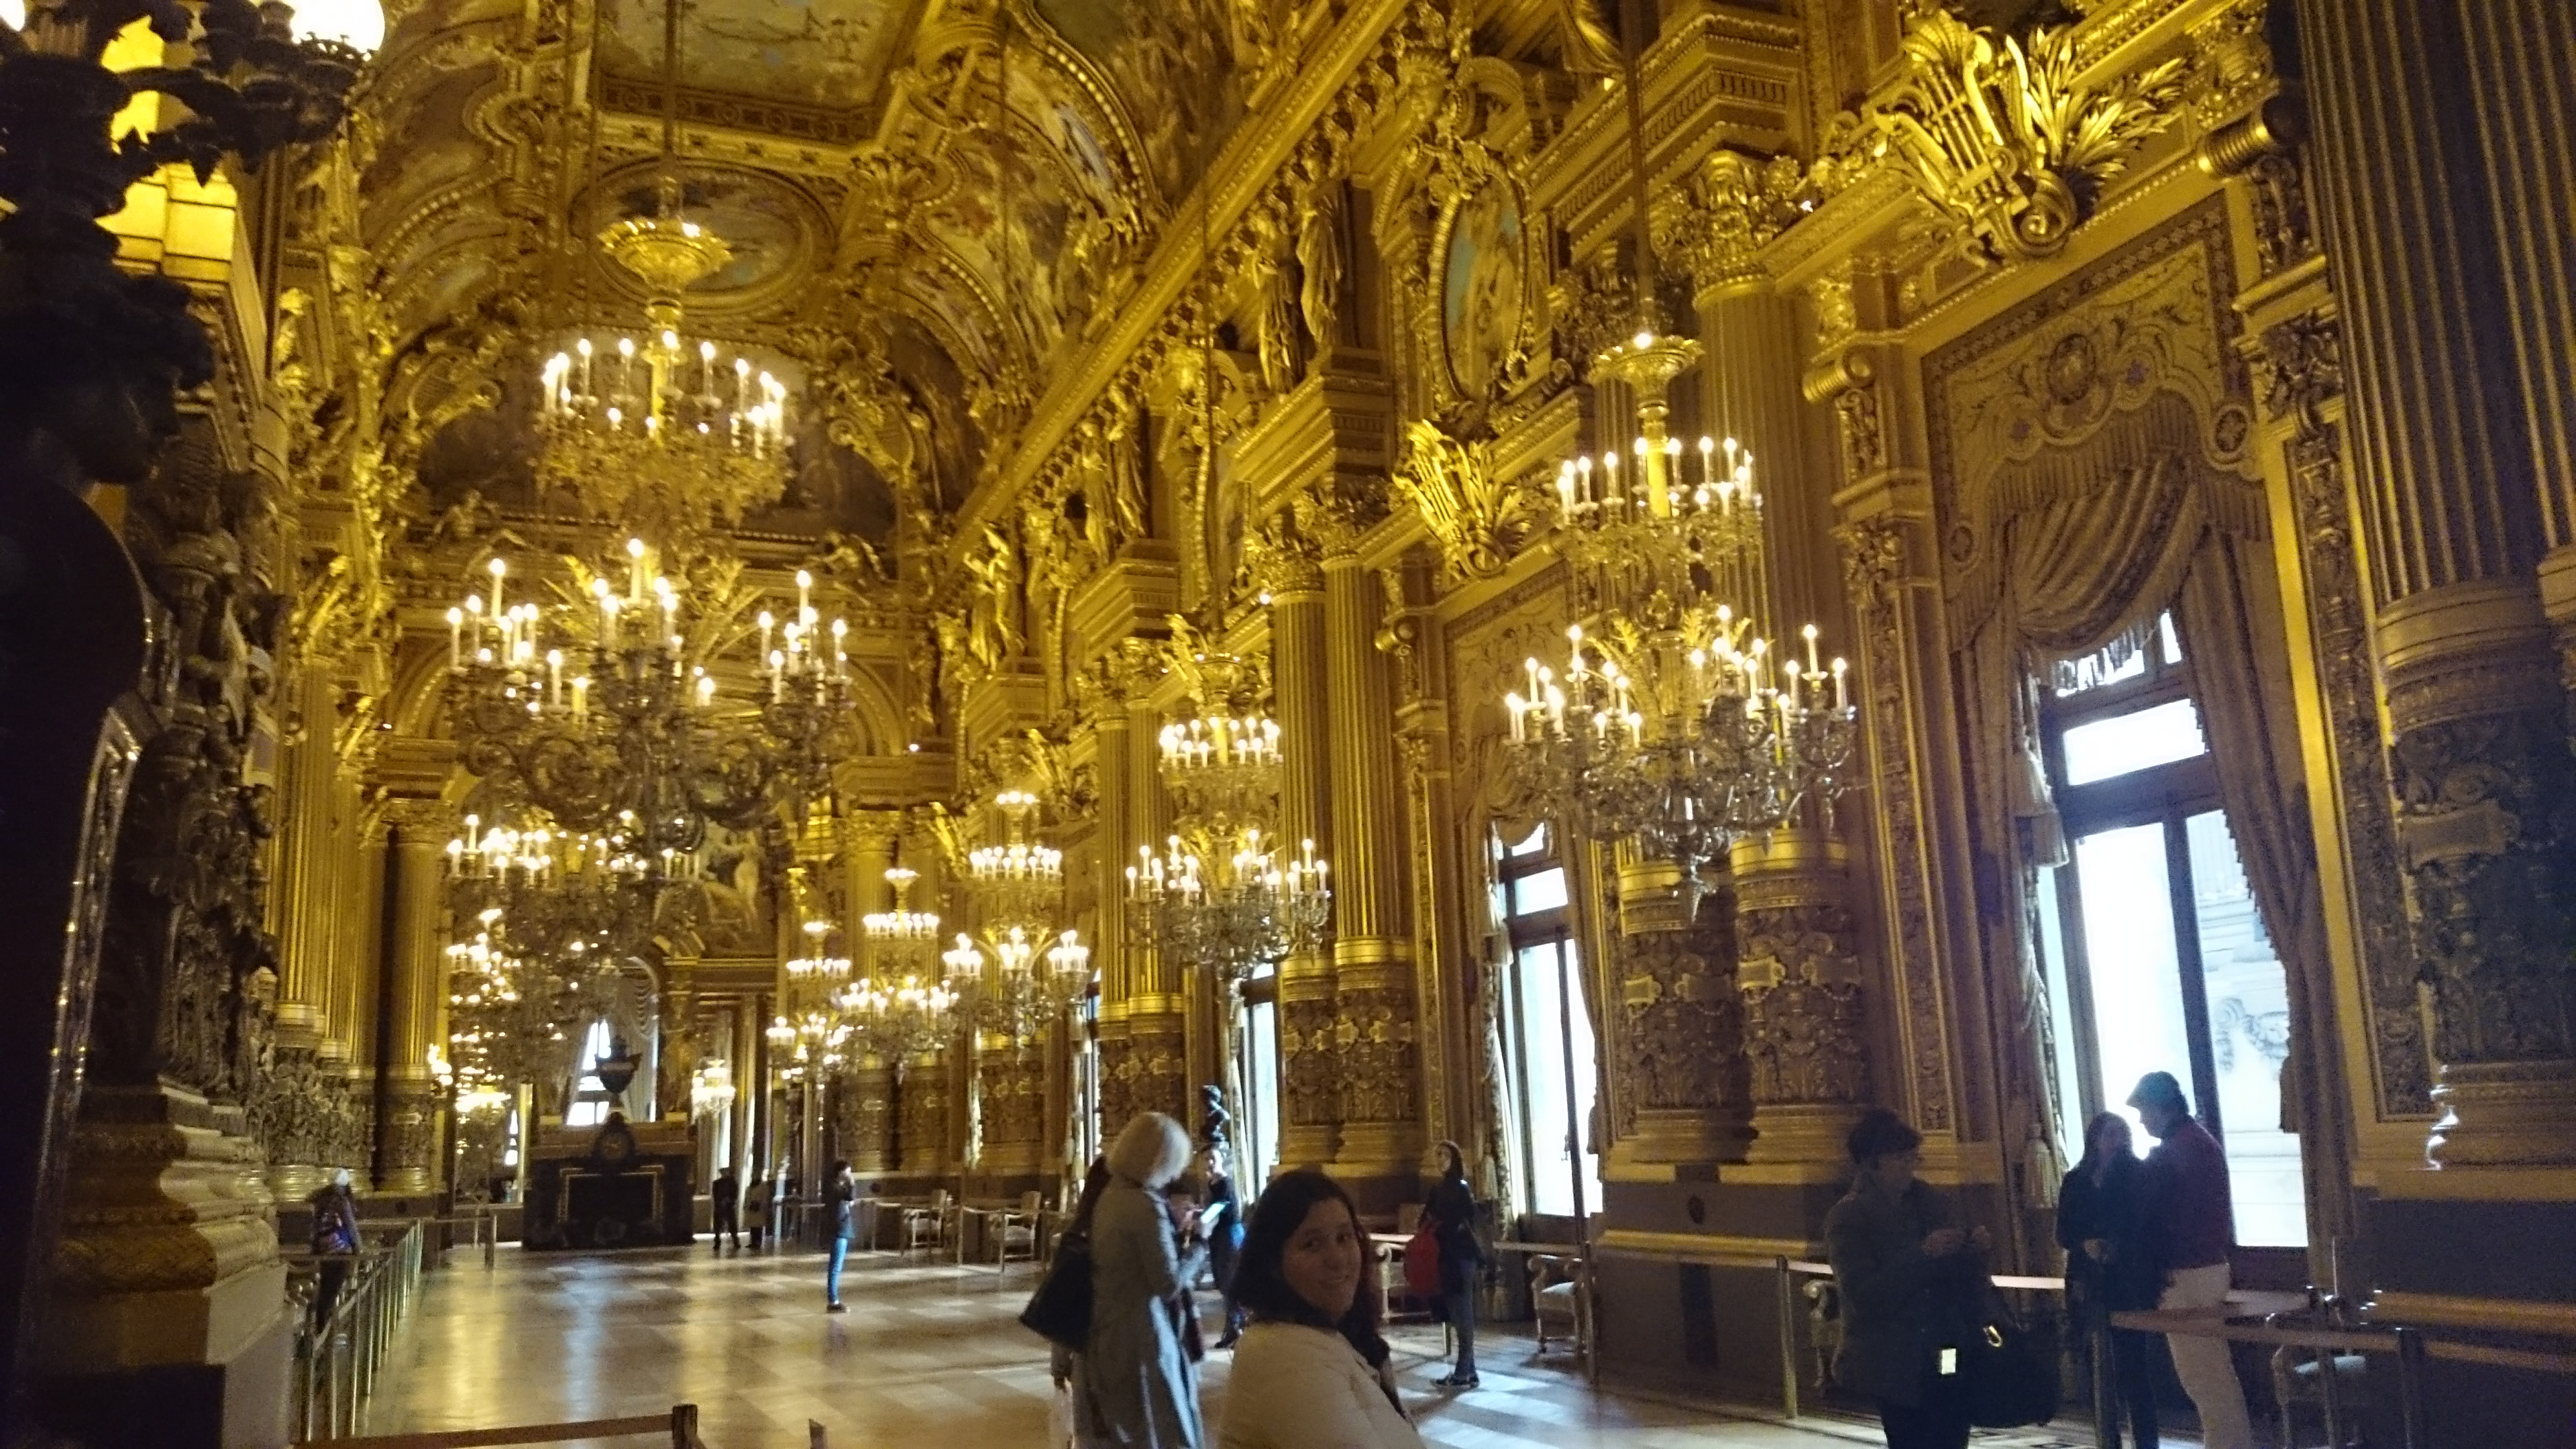 dsc 1046 - Una visita a la Opera de Paris (Palais Garnier)